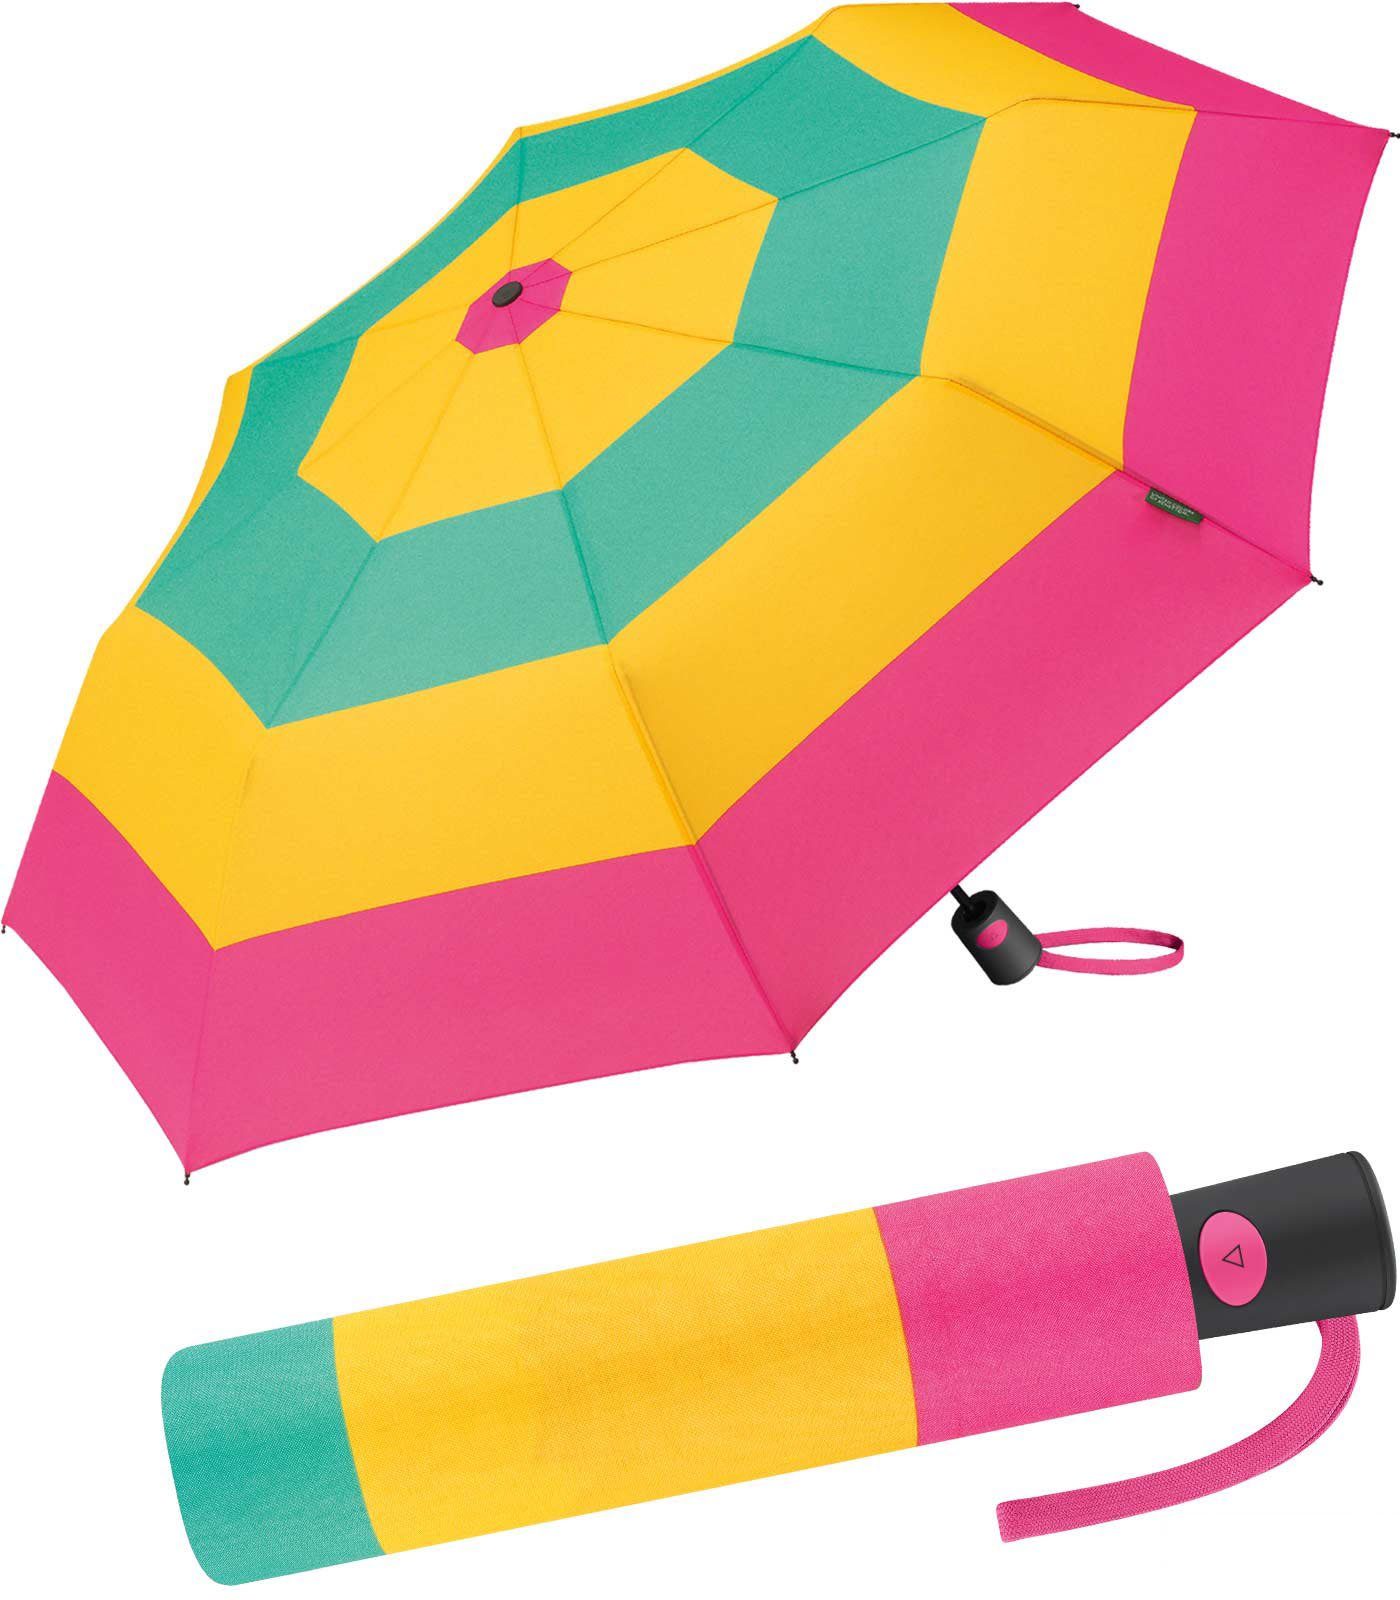 United Colors of Benetton Langregenschirm Mini-Regenschirm Auf-Automatik Block Stripes, stabil, leicht und farbenfroh